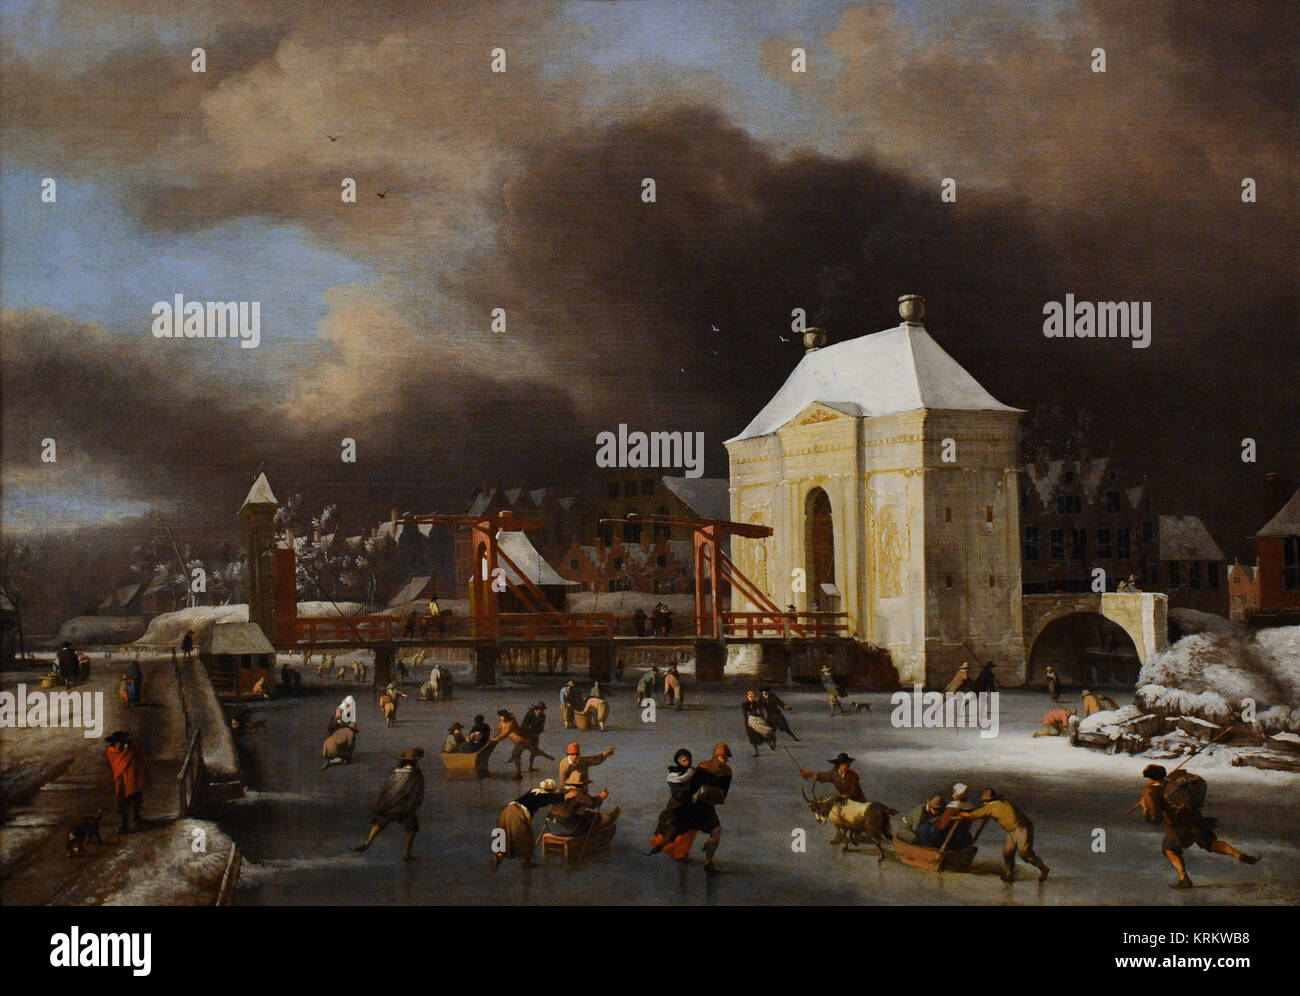 Jan van Kessel II (1641-1680). Peintre flamand. Par la Heilige Wegs Poort à Amsterdam, 1680. Galerie nationale. Oslo. La Norvège. Banque D'Images